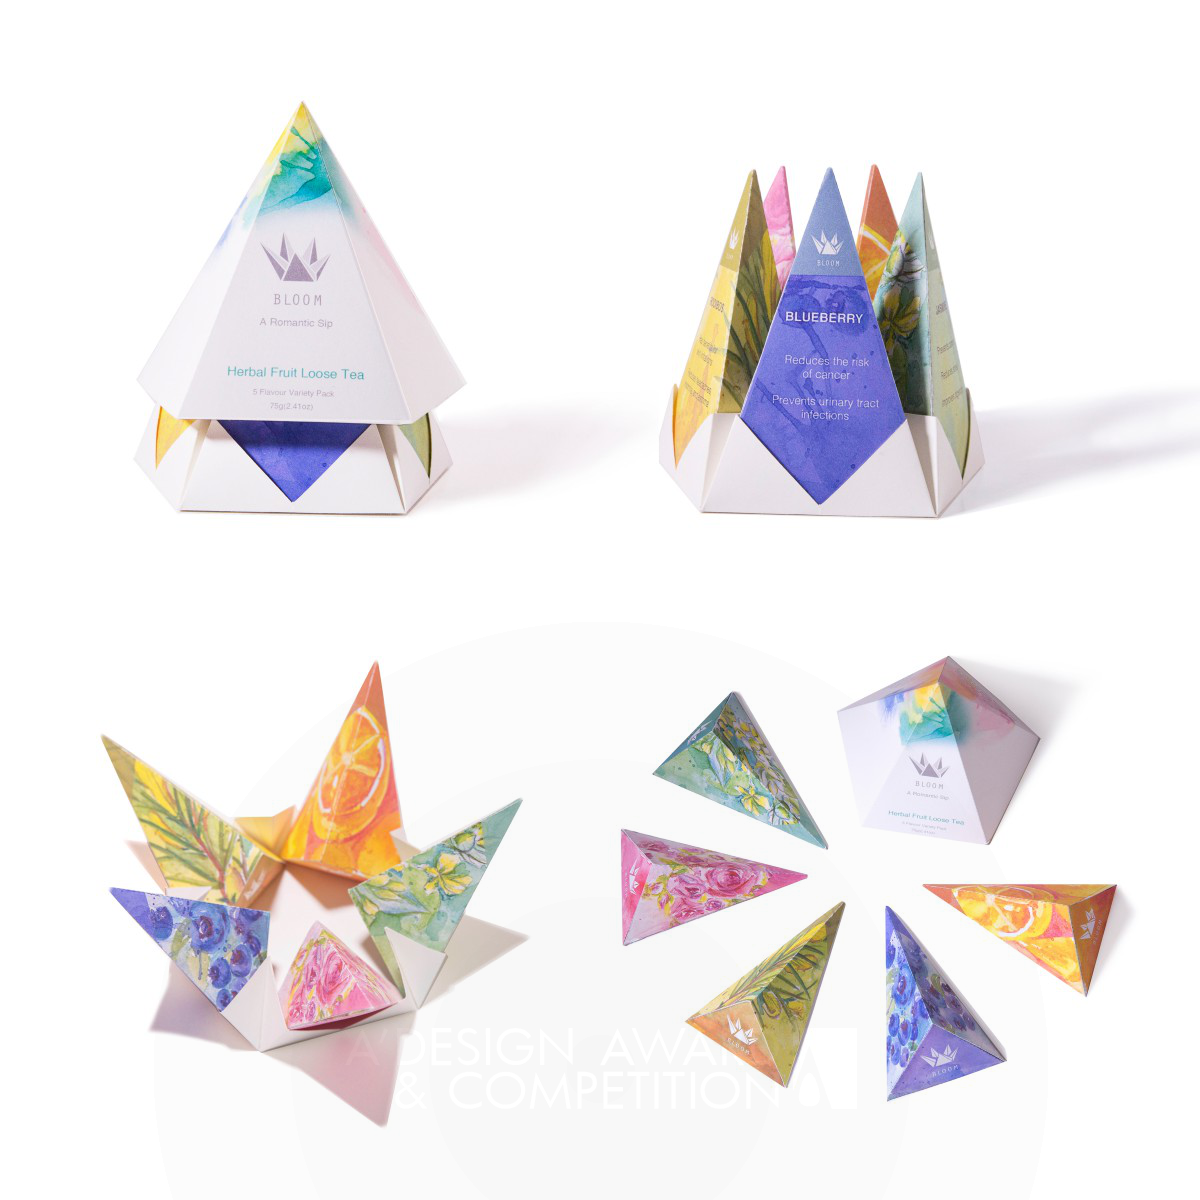 Bloom Tea Packaging and Branding by Danyang Pang